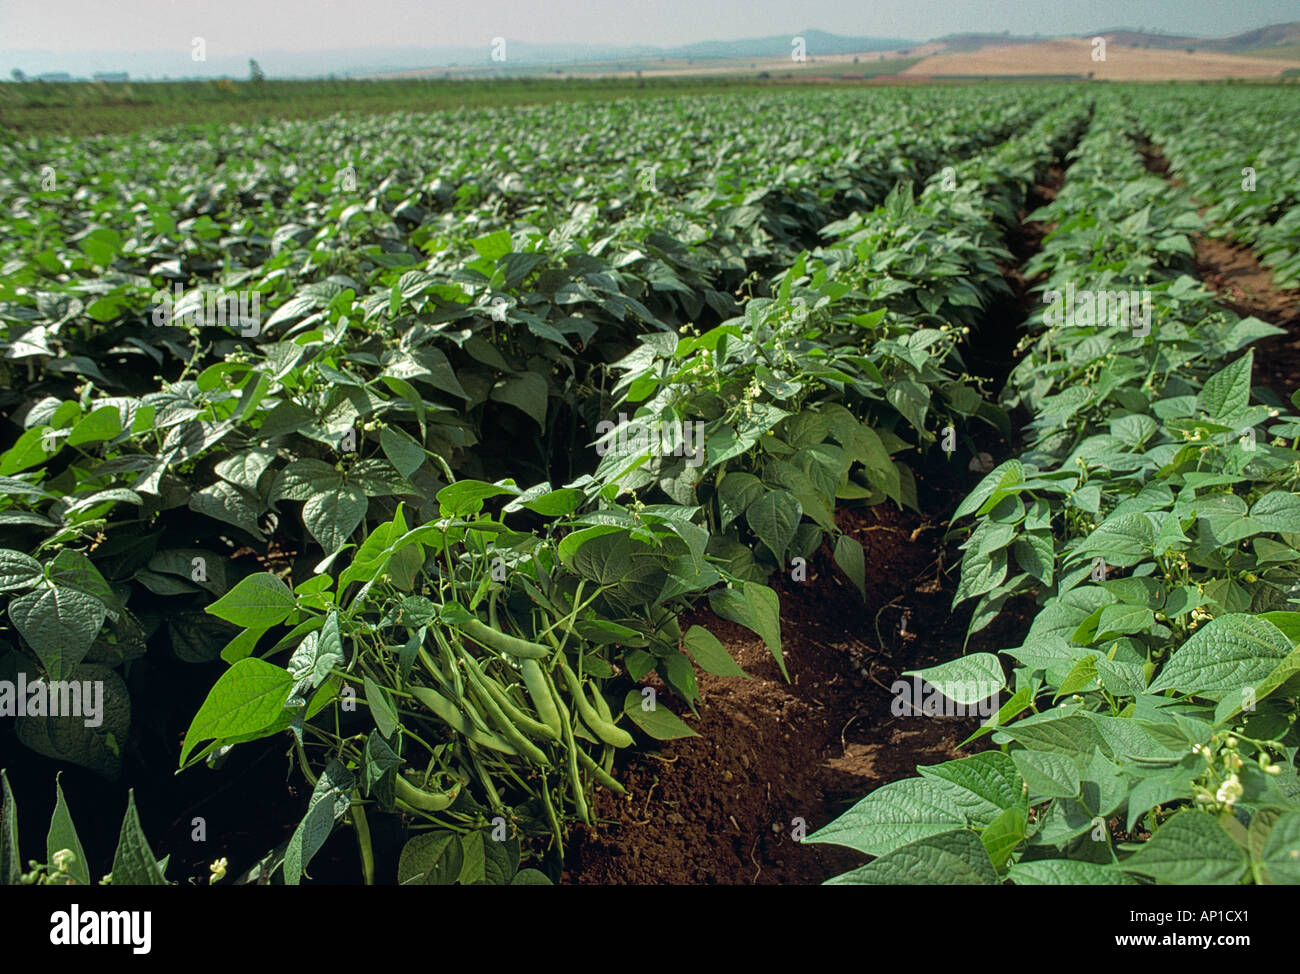 Landwirtschaft - Bereich der Reife grüne Bohnen reif für die Ernte /  Karacabey, Türkei Stockfotografie - Alamy